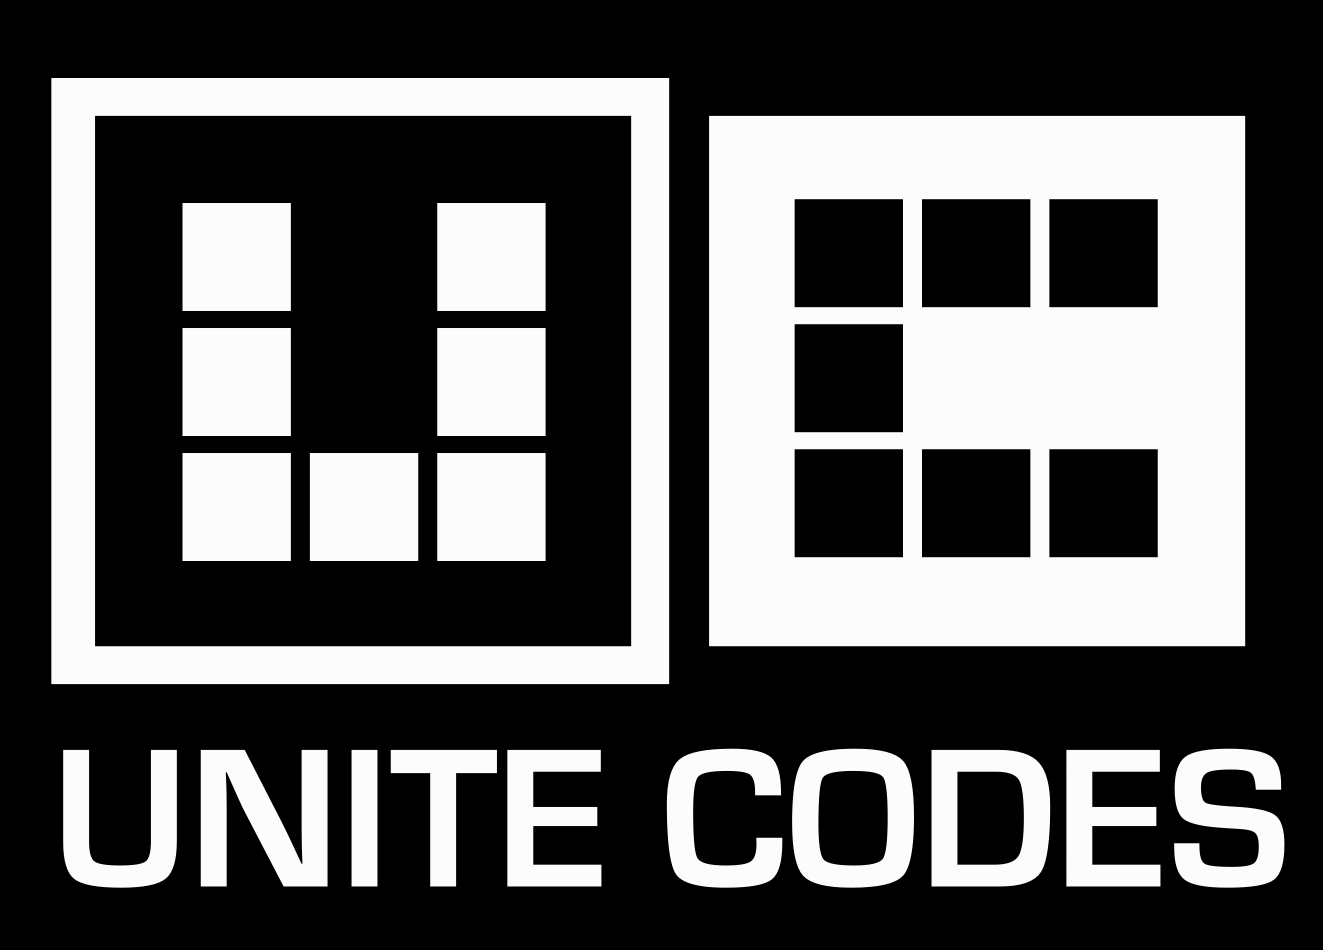 Unite Codes